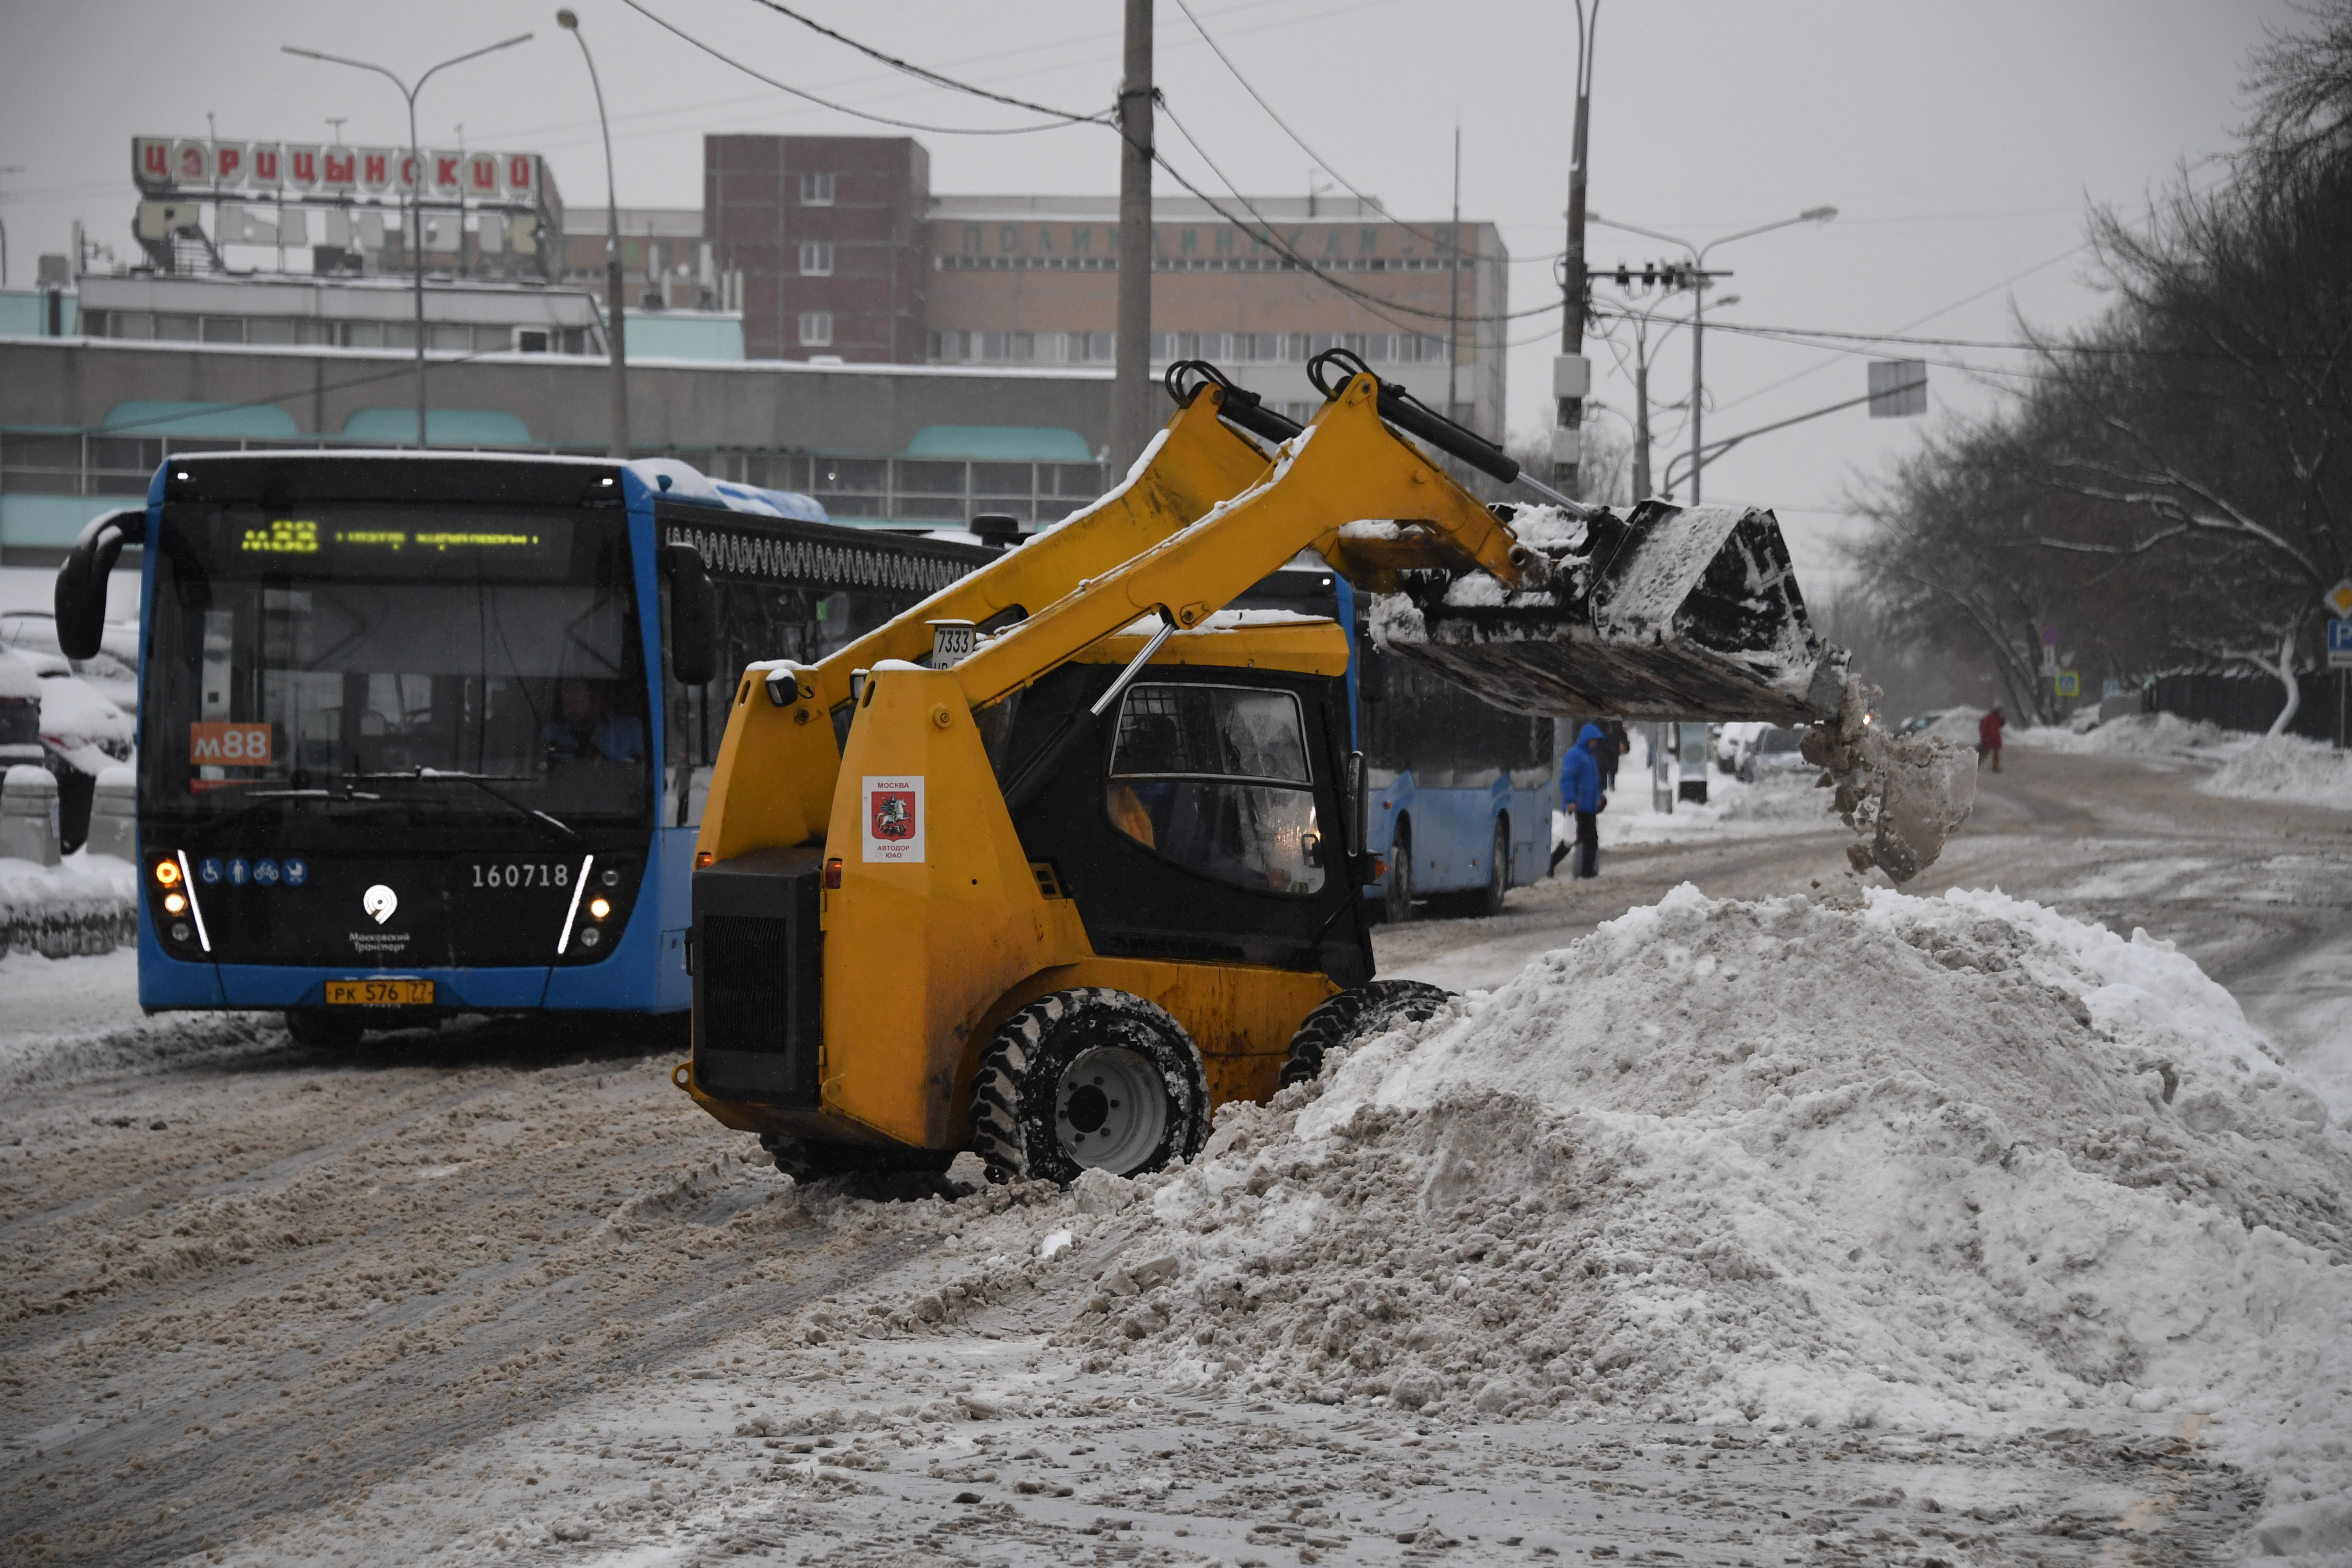 Общественный транспорт встал из-за плохой уборки снега в Петербурге: автобусы меняют маршруты